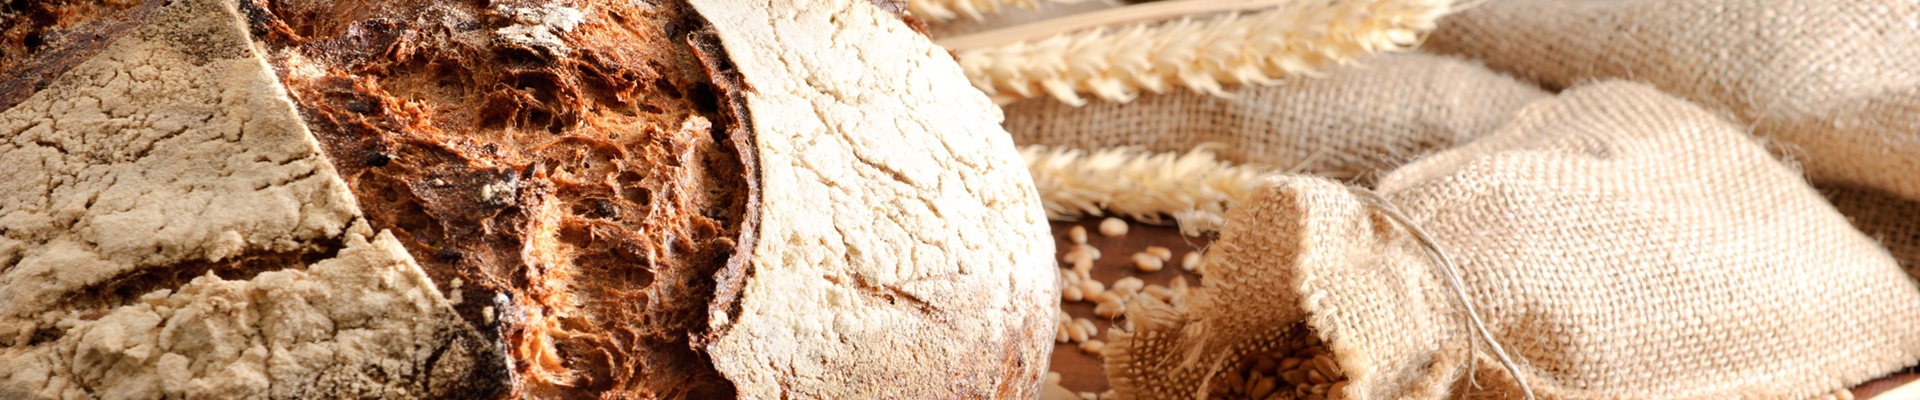 Taller monográfico de pan gallego